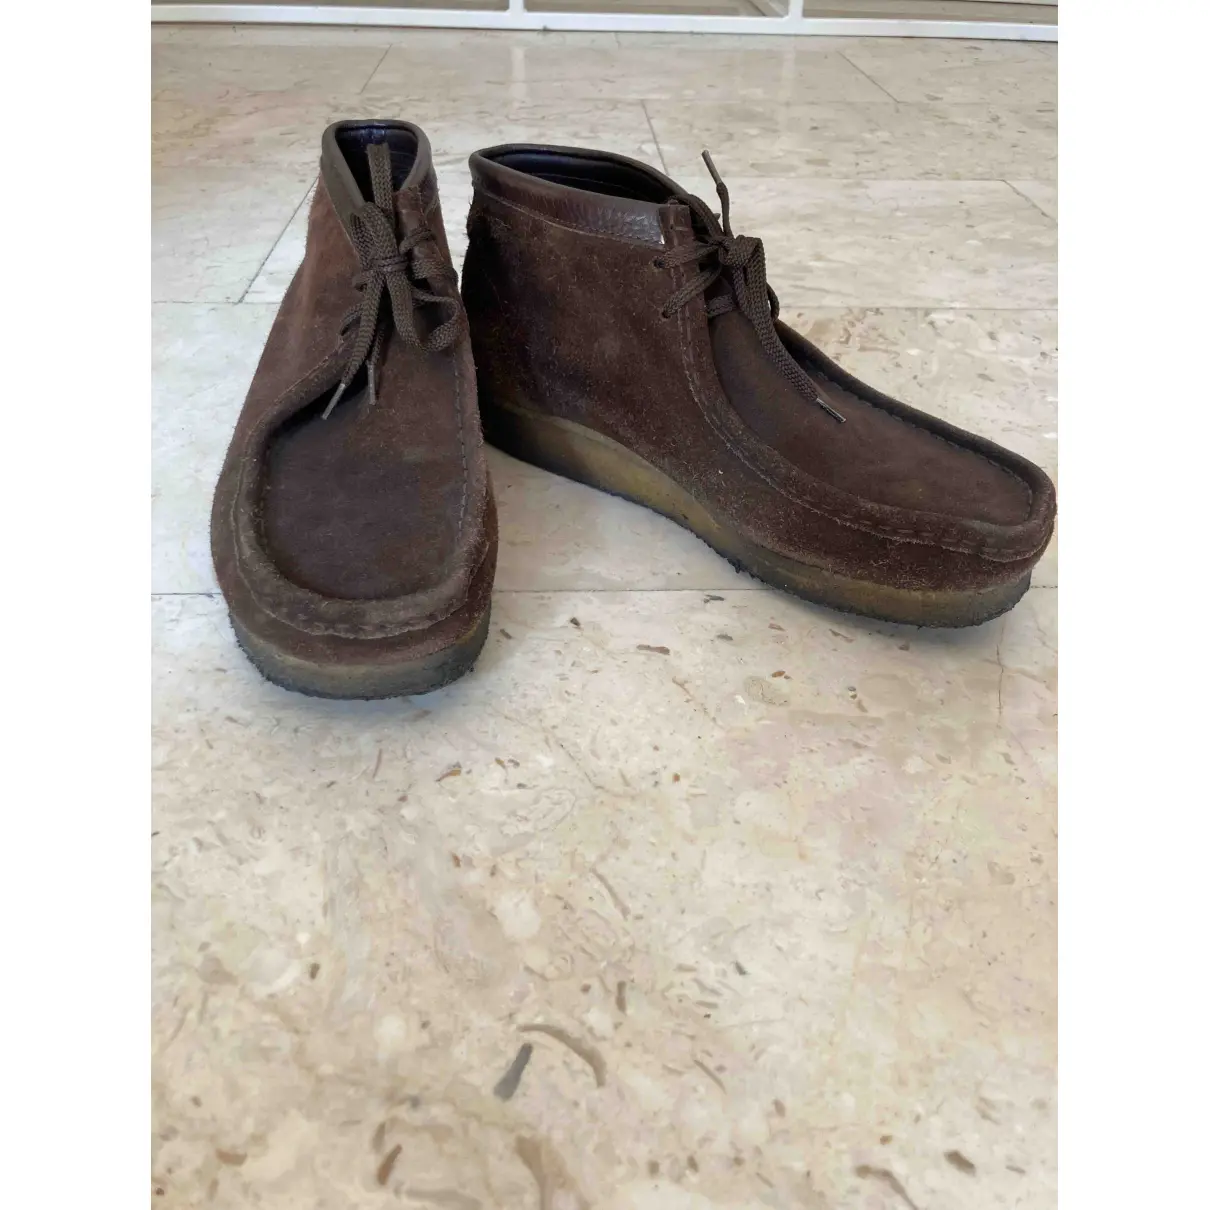 Buy Clarks Brown Suede Boots online